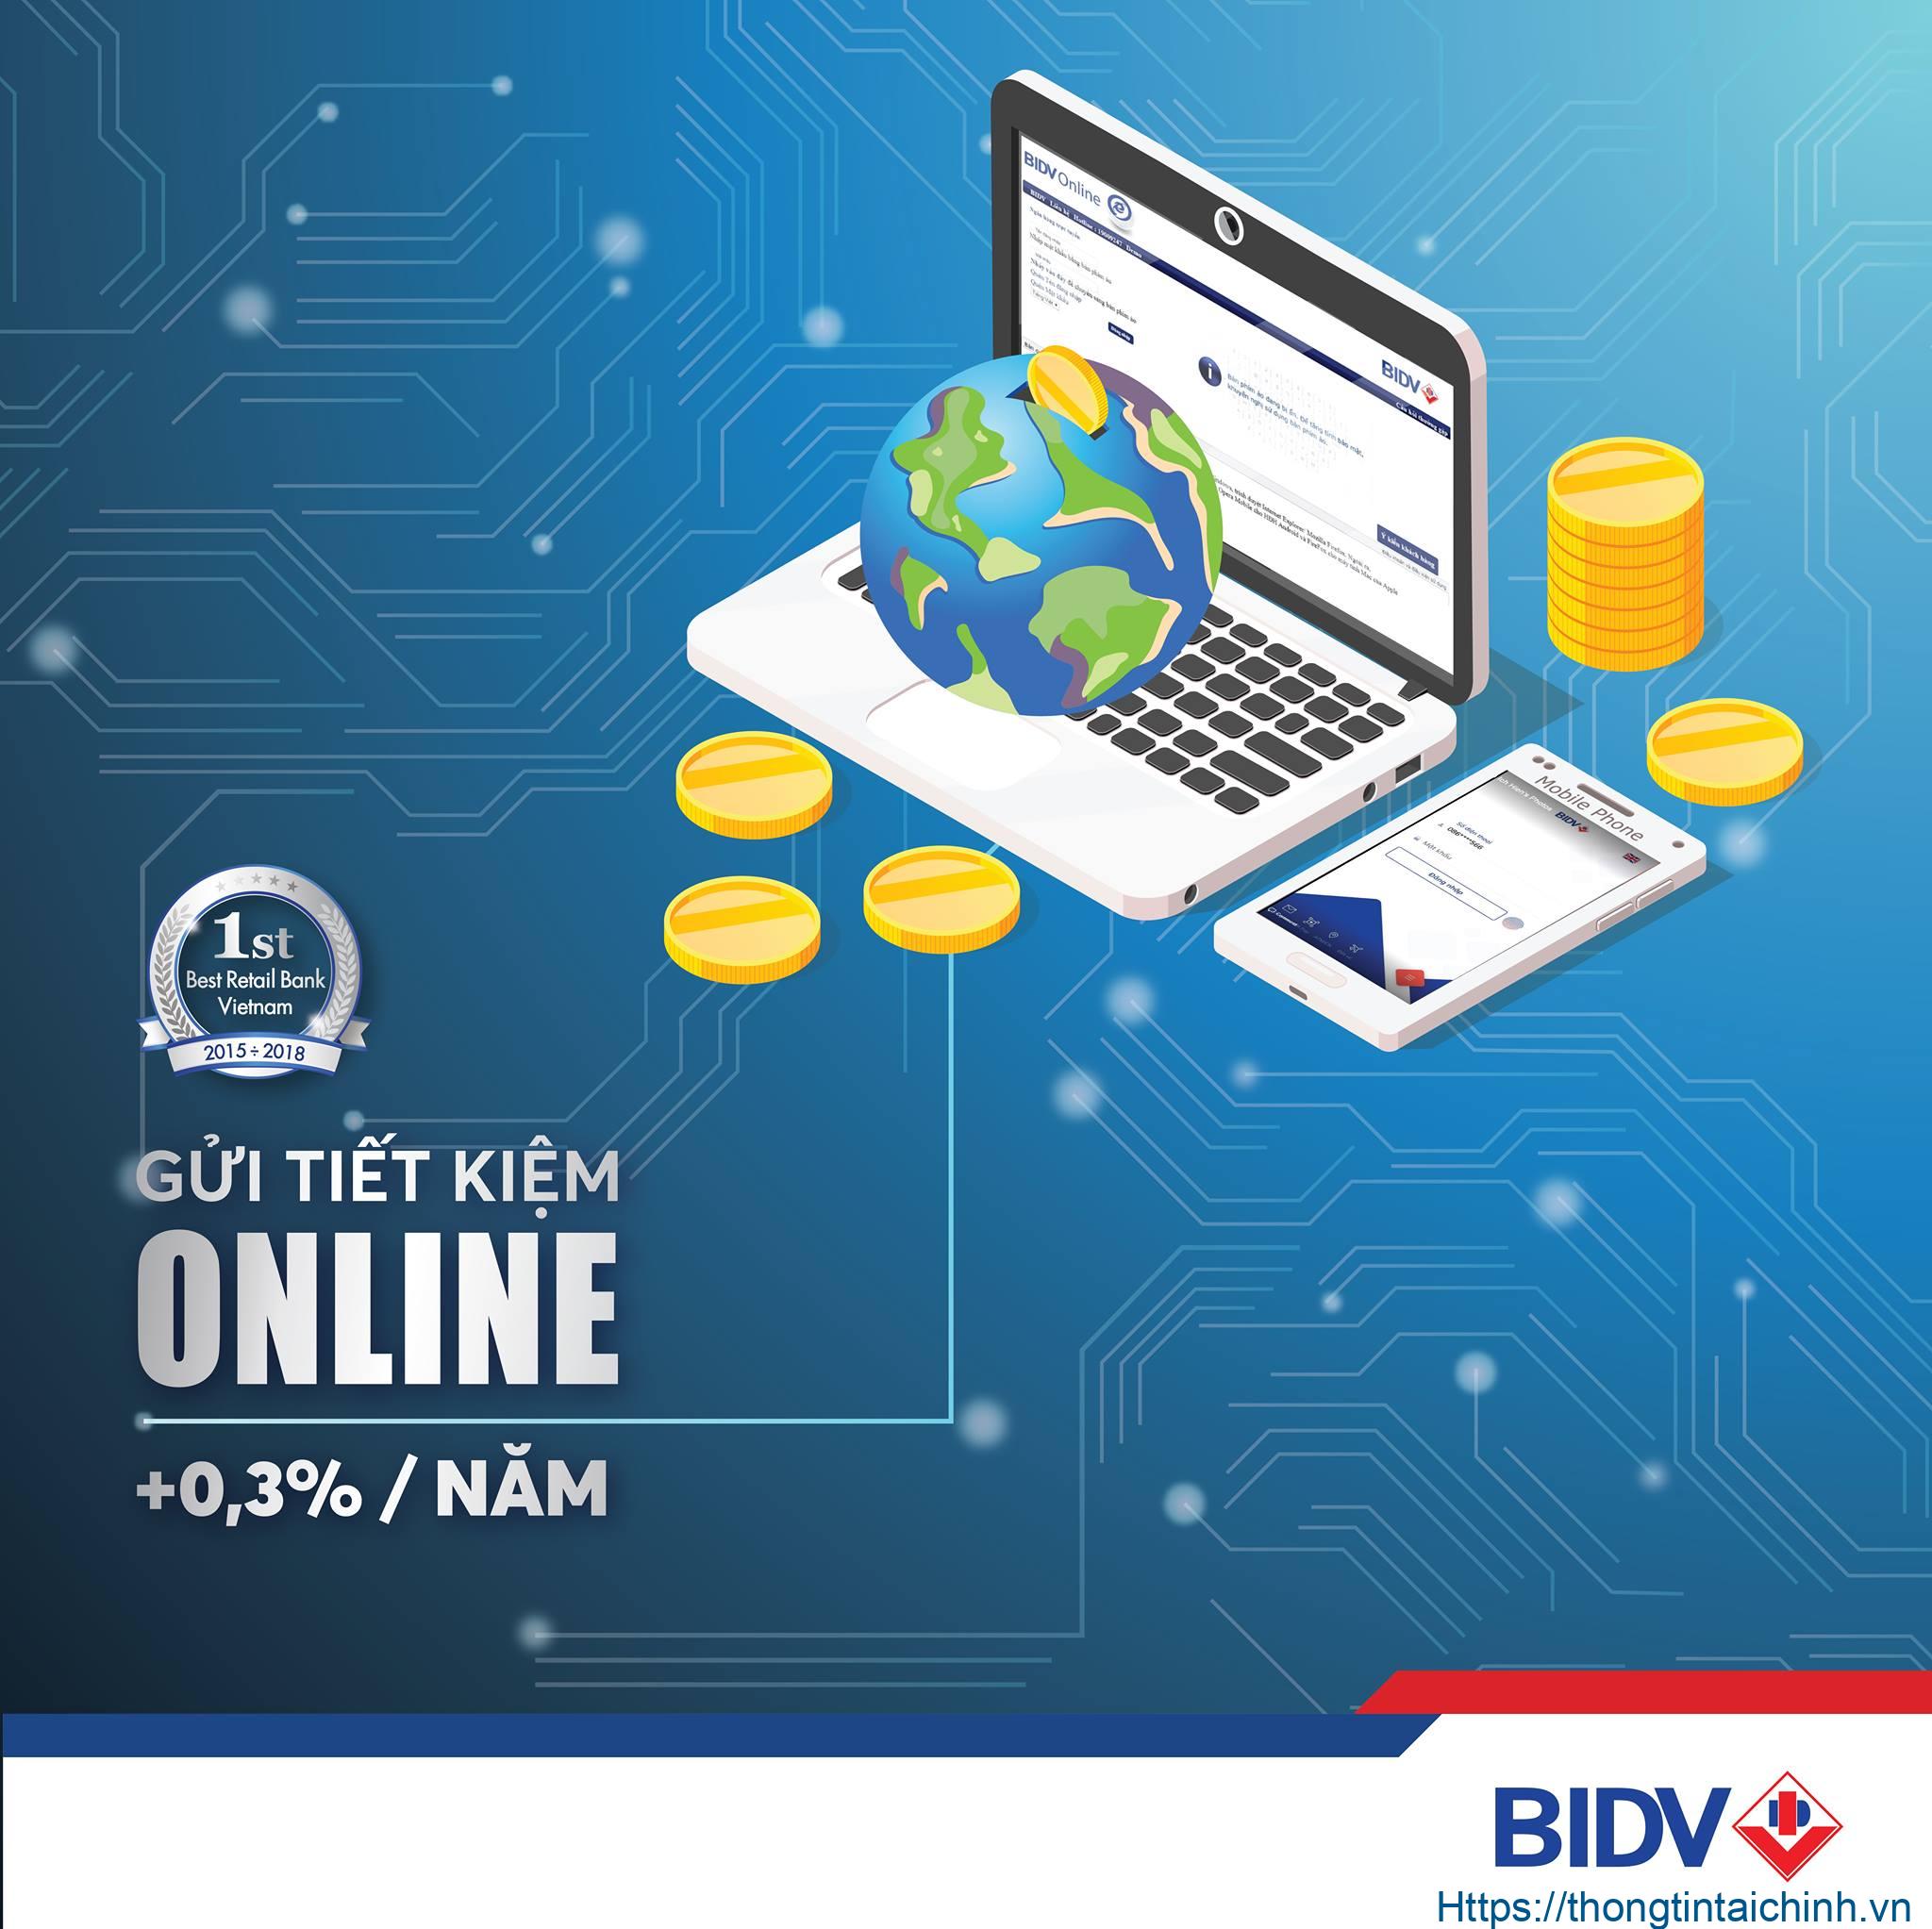 Lãi suất gửi tiết kiệm BIDV online hấp dẫn, cạnh tranh với nhiều ngân hàng khác